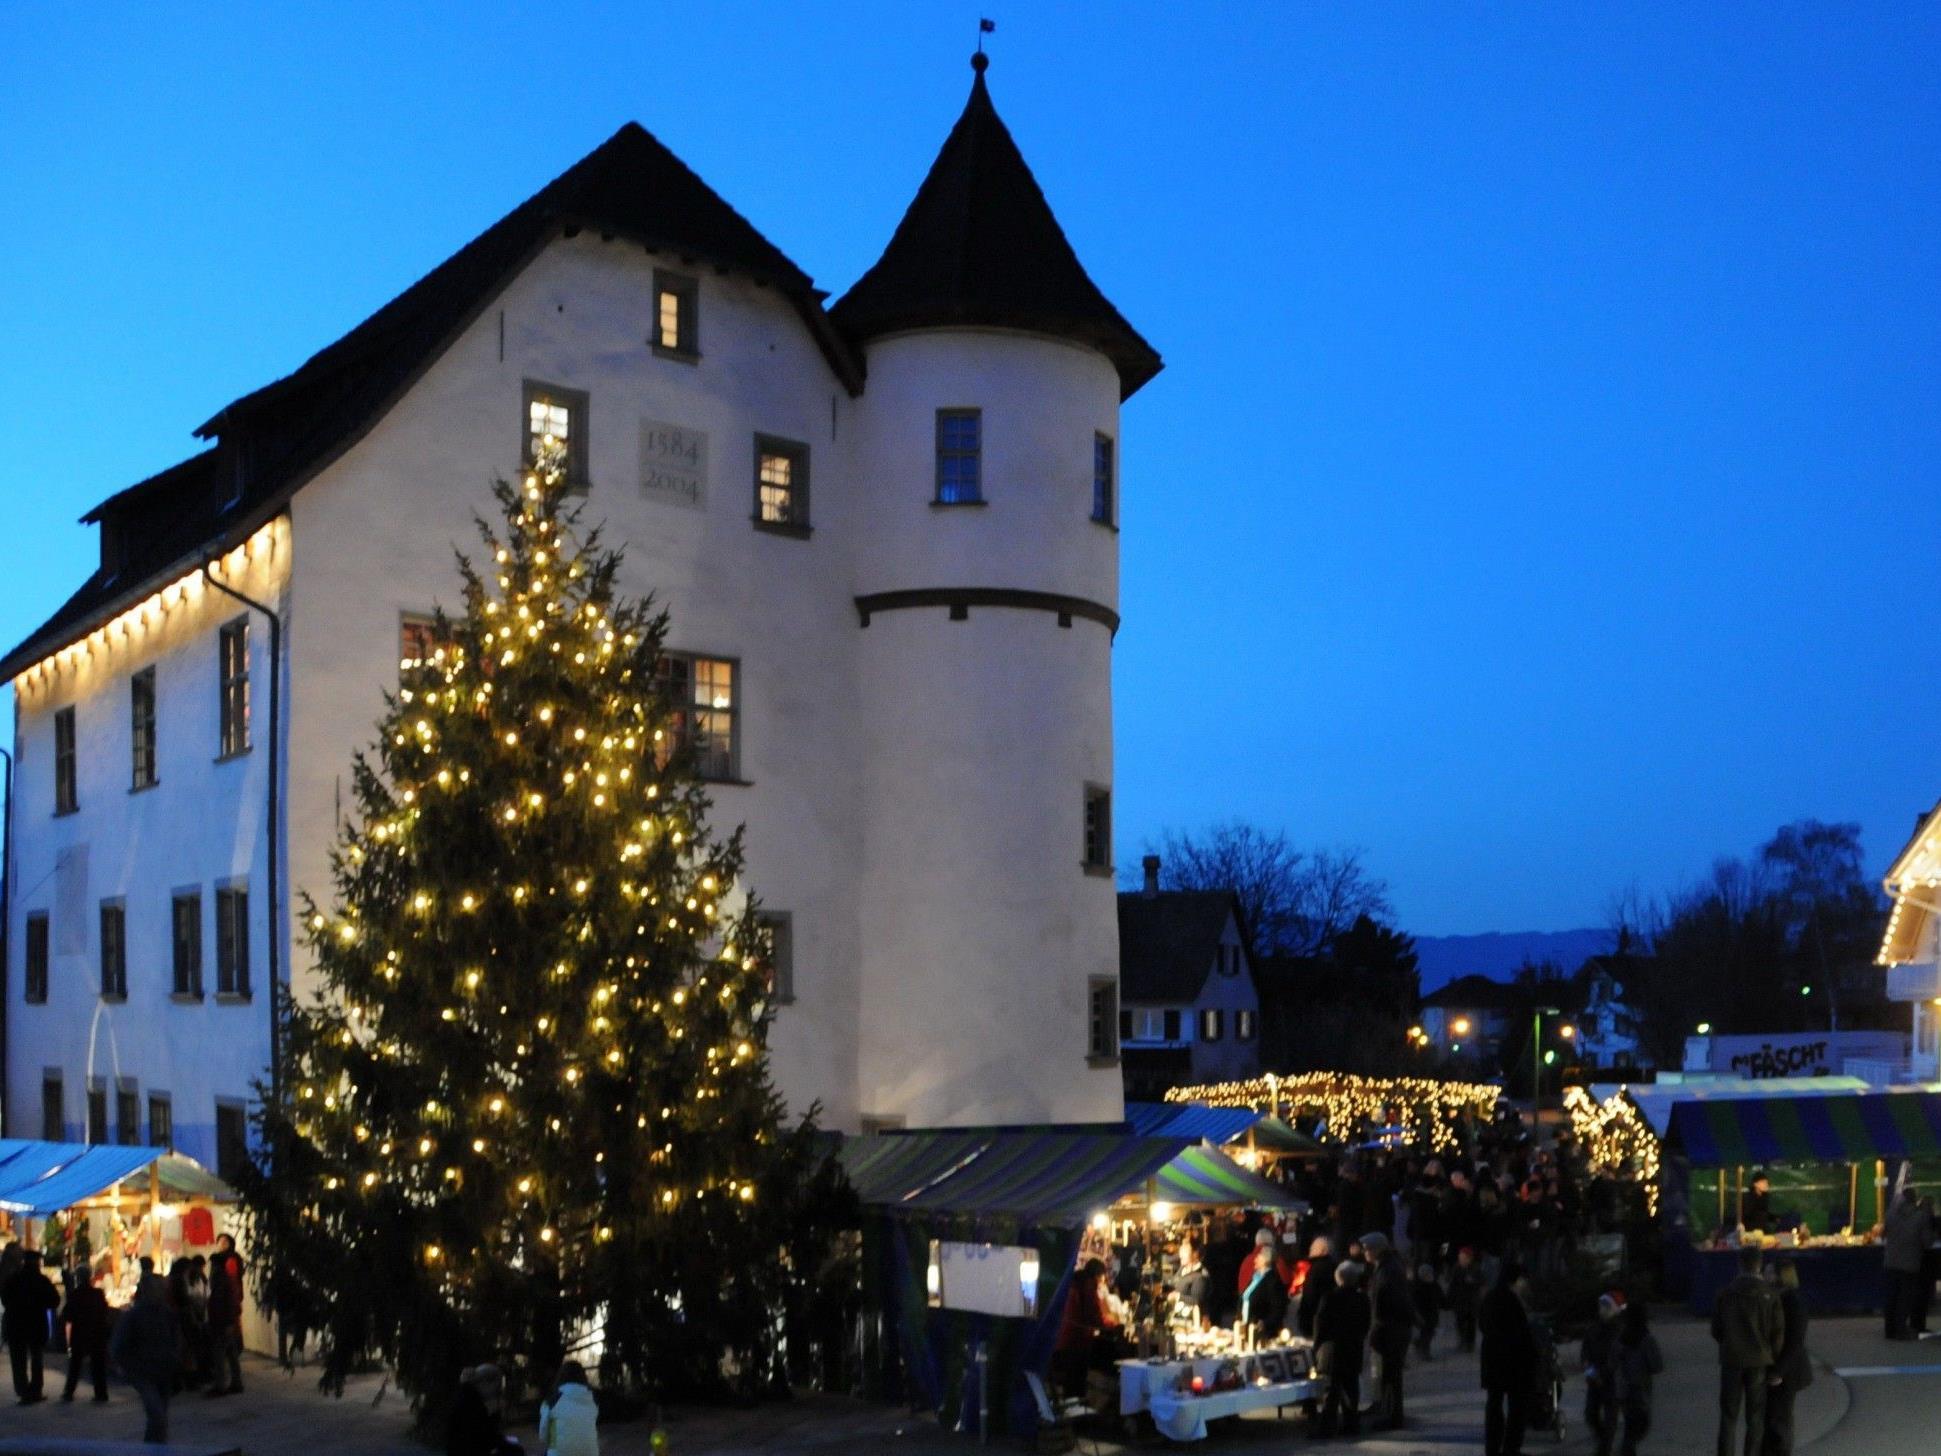 Am ersten Adventwochenende vom 30.11. bis 2.12. findet wieder der traditionelle Götzner Weihnachtsmarkt beim Jonas Schlössle statt